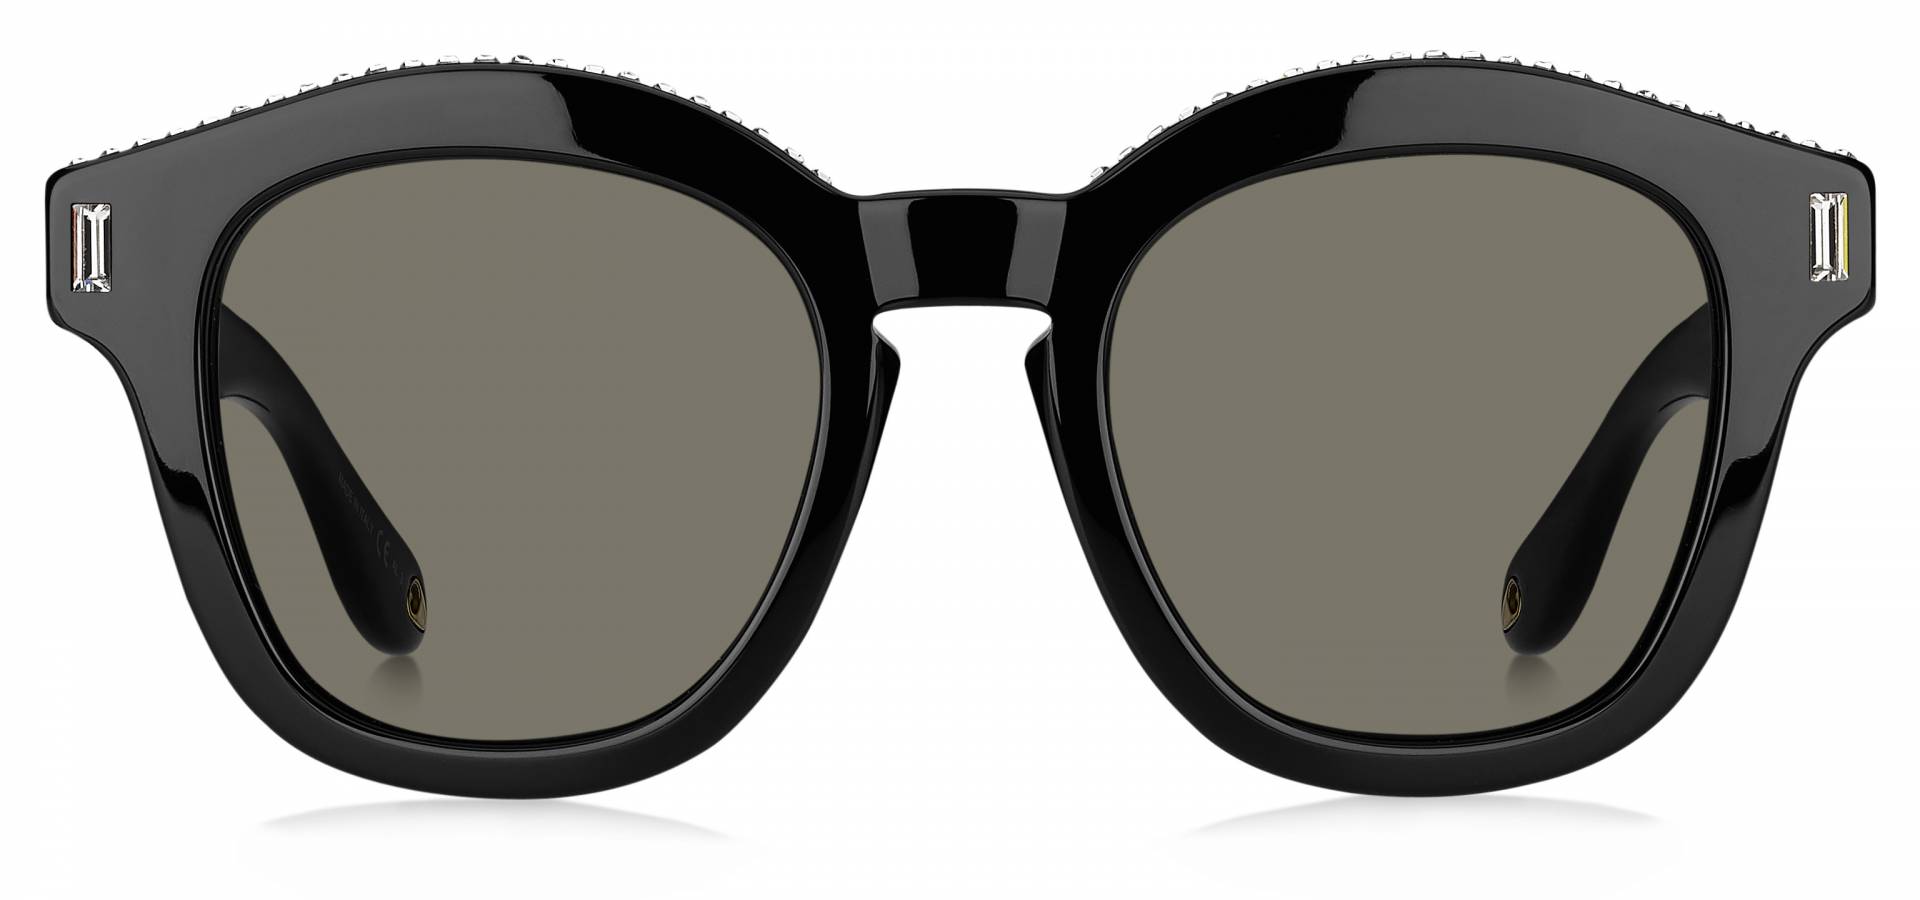 Sunčane naočale Givenchy GV 7070/S: Boja: Black, Veličina: 50/22/145, Spol: ženske, Materijal: acetat